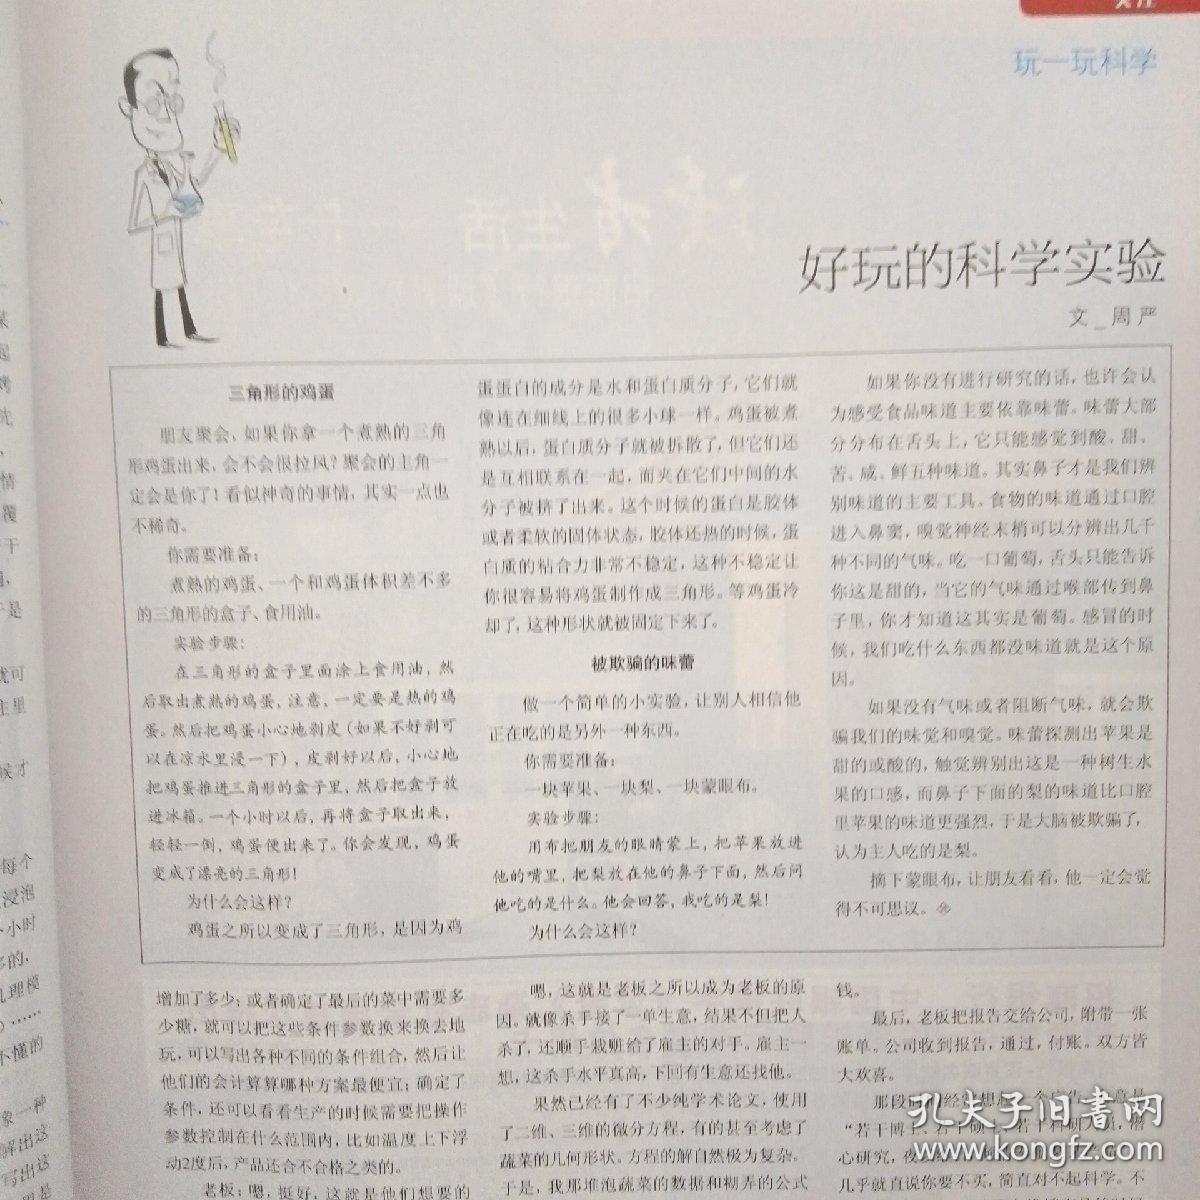 读者 ·原创版 2009年 月刊 5月刊 第5期总第49期（专访：柴静 航行在海、孤独的中国女儿——邓丽君）